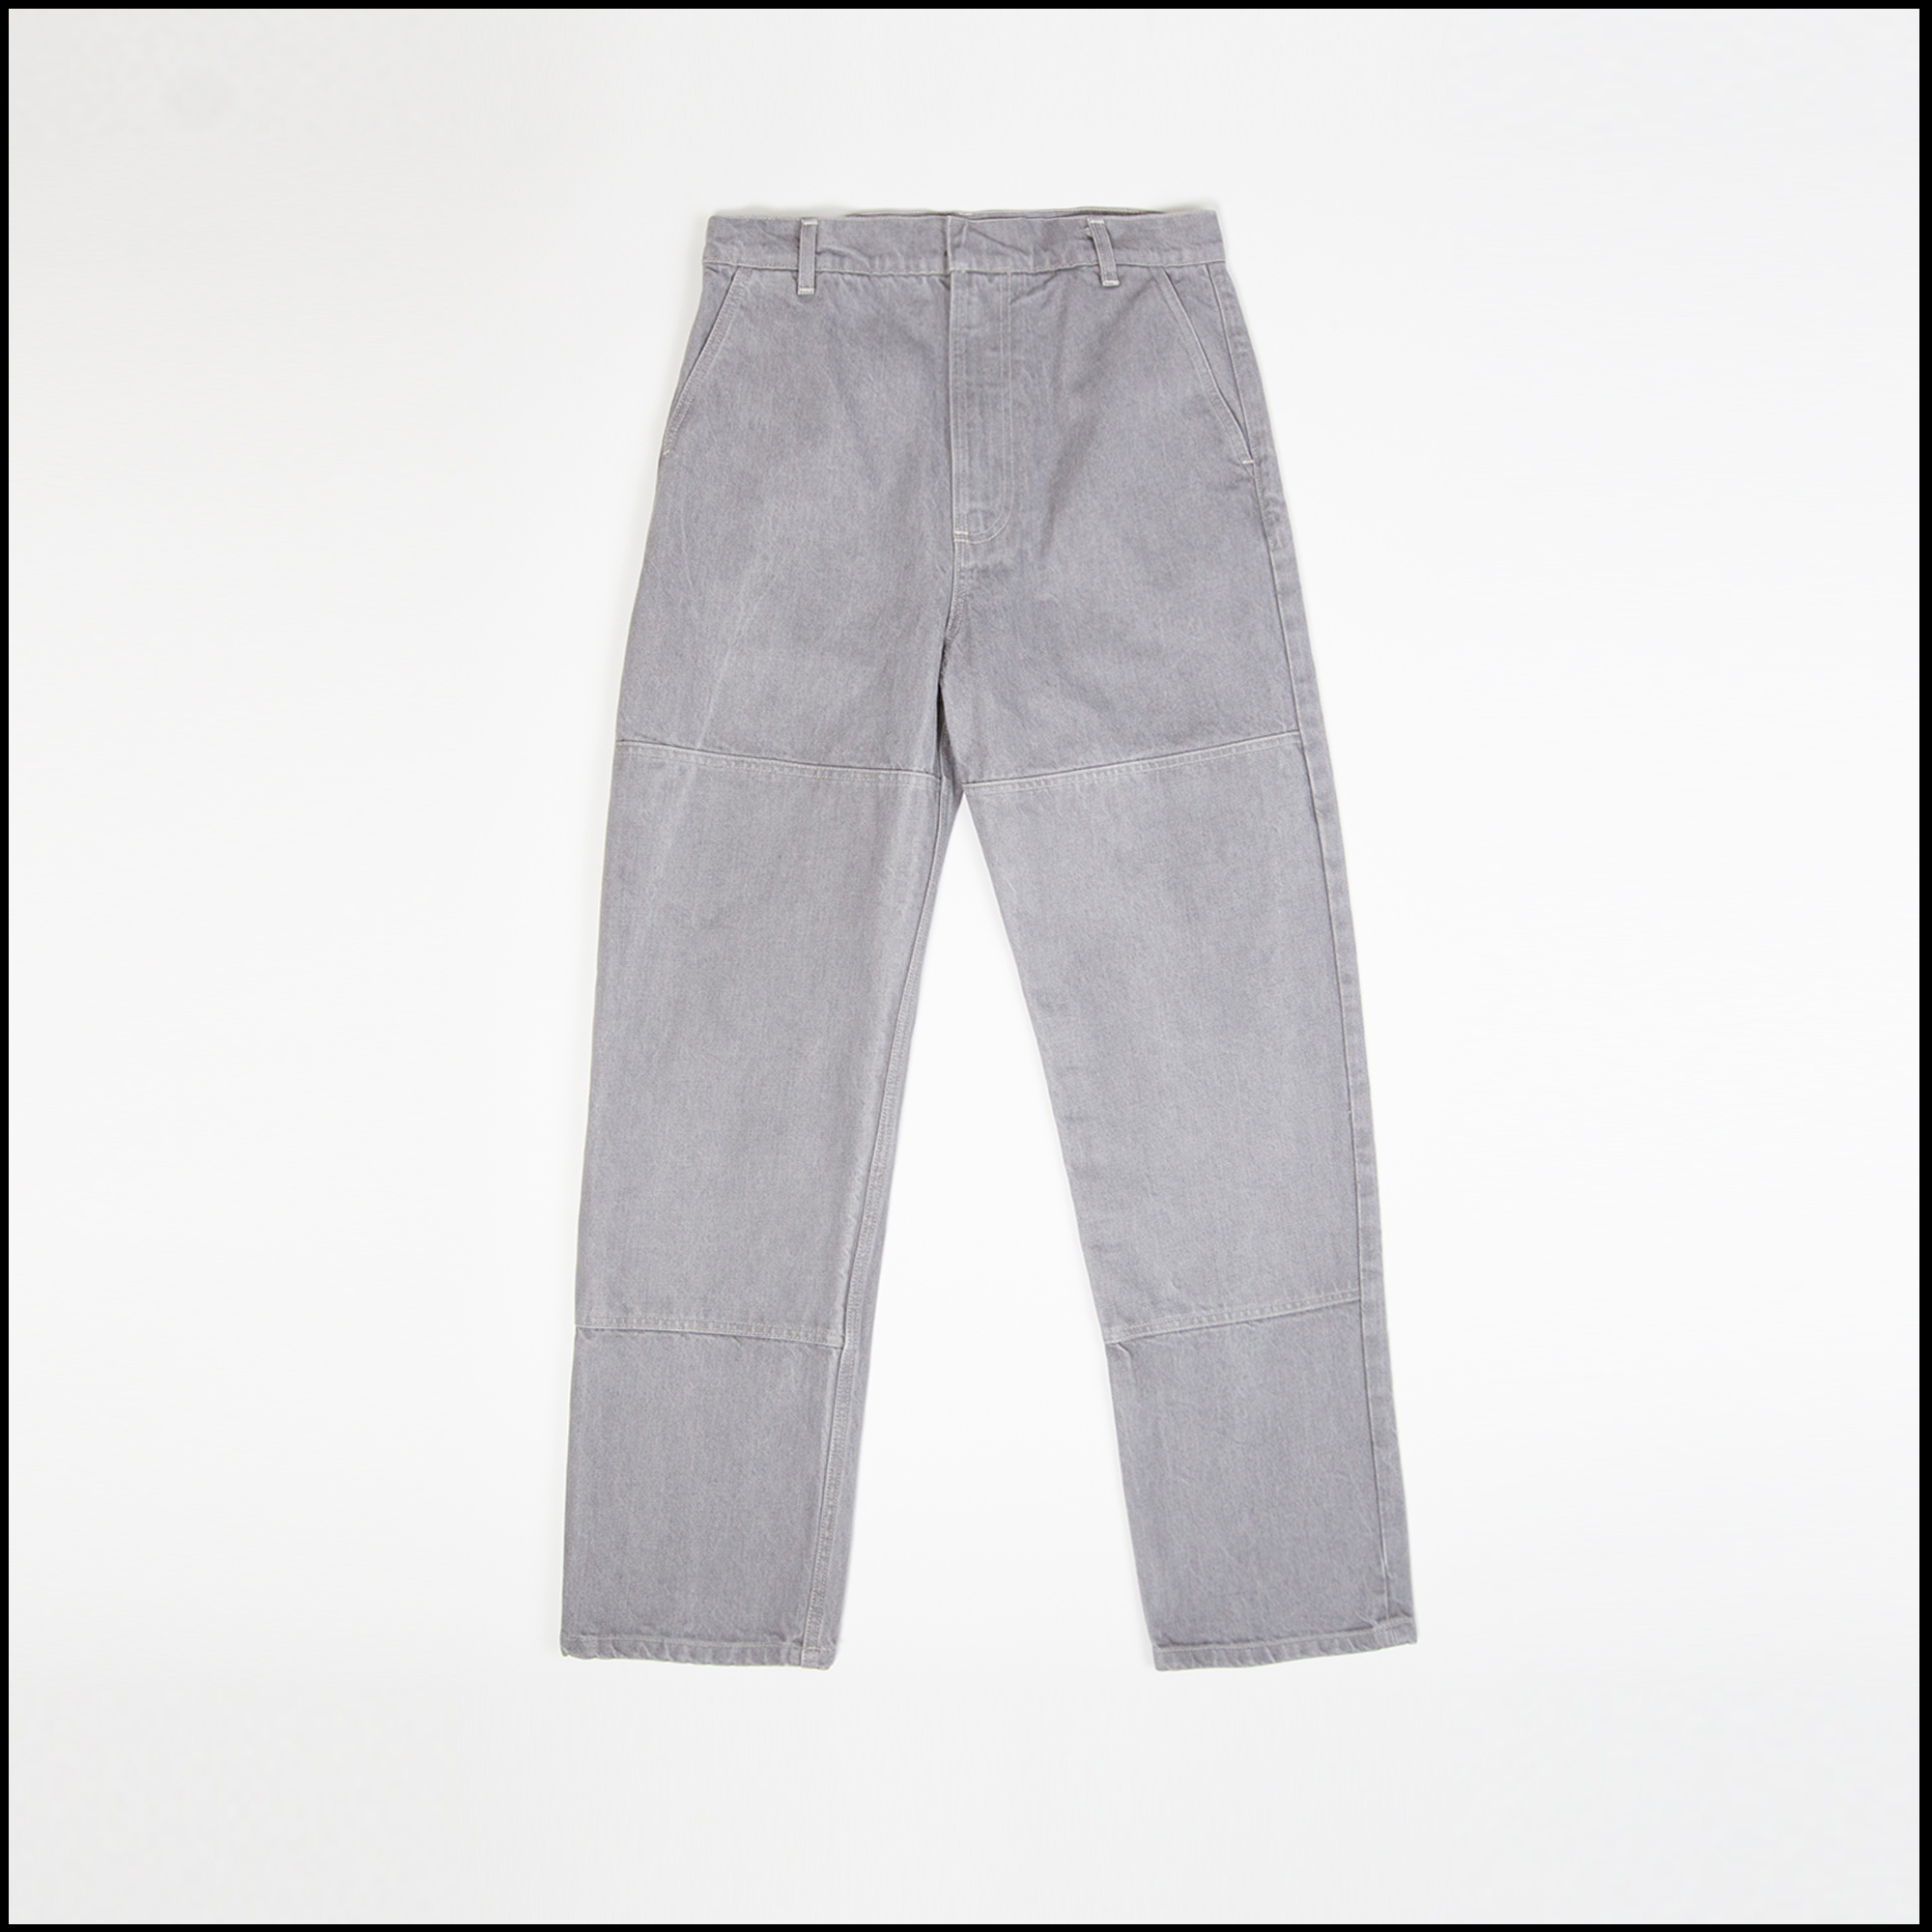 4 POCKET pants in Light grey color by Arpenteur